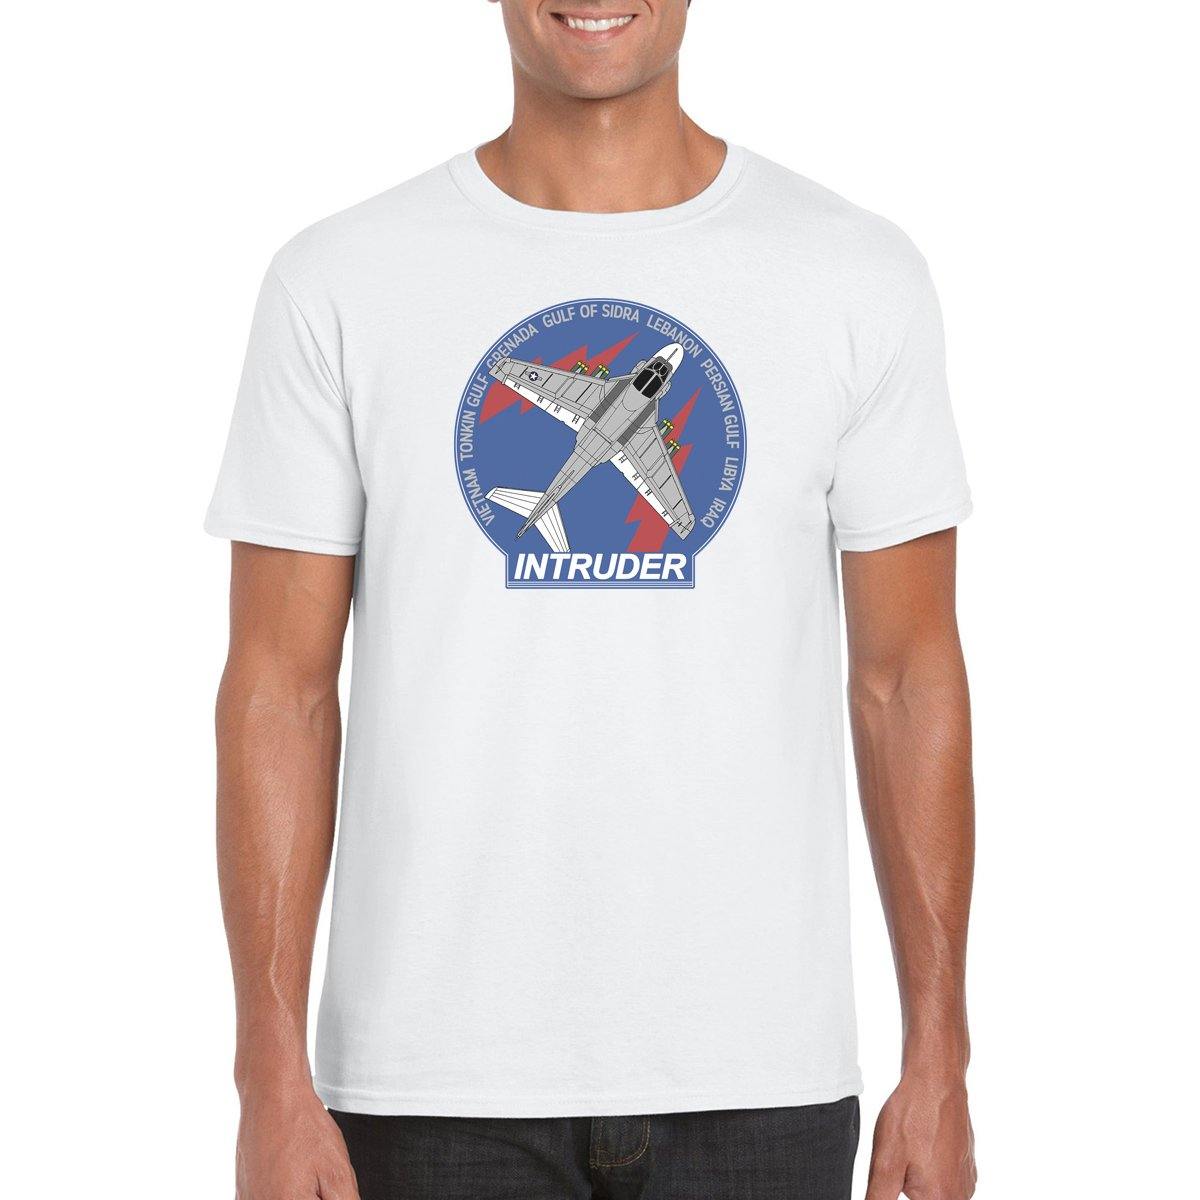 A-6 INTRUDER T-Shirt, Prowler ,A-6E Intruders, Grumman – Mach 5 ...